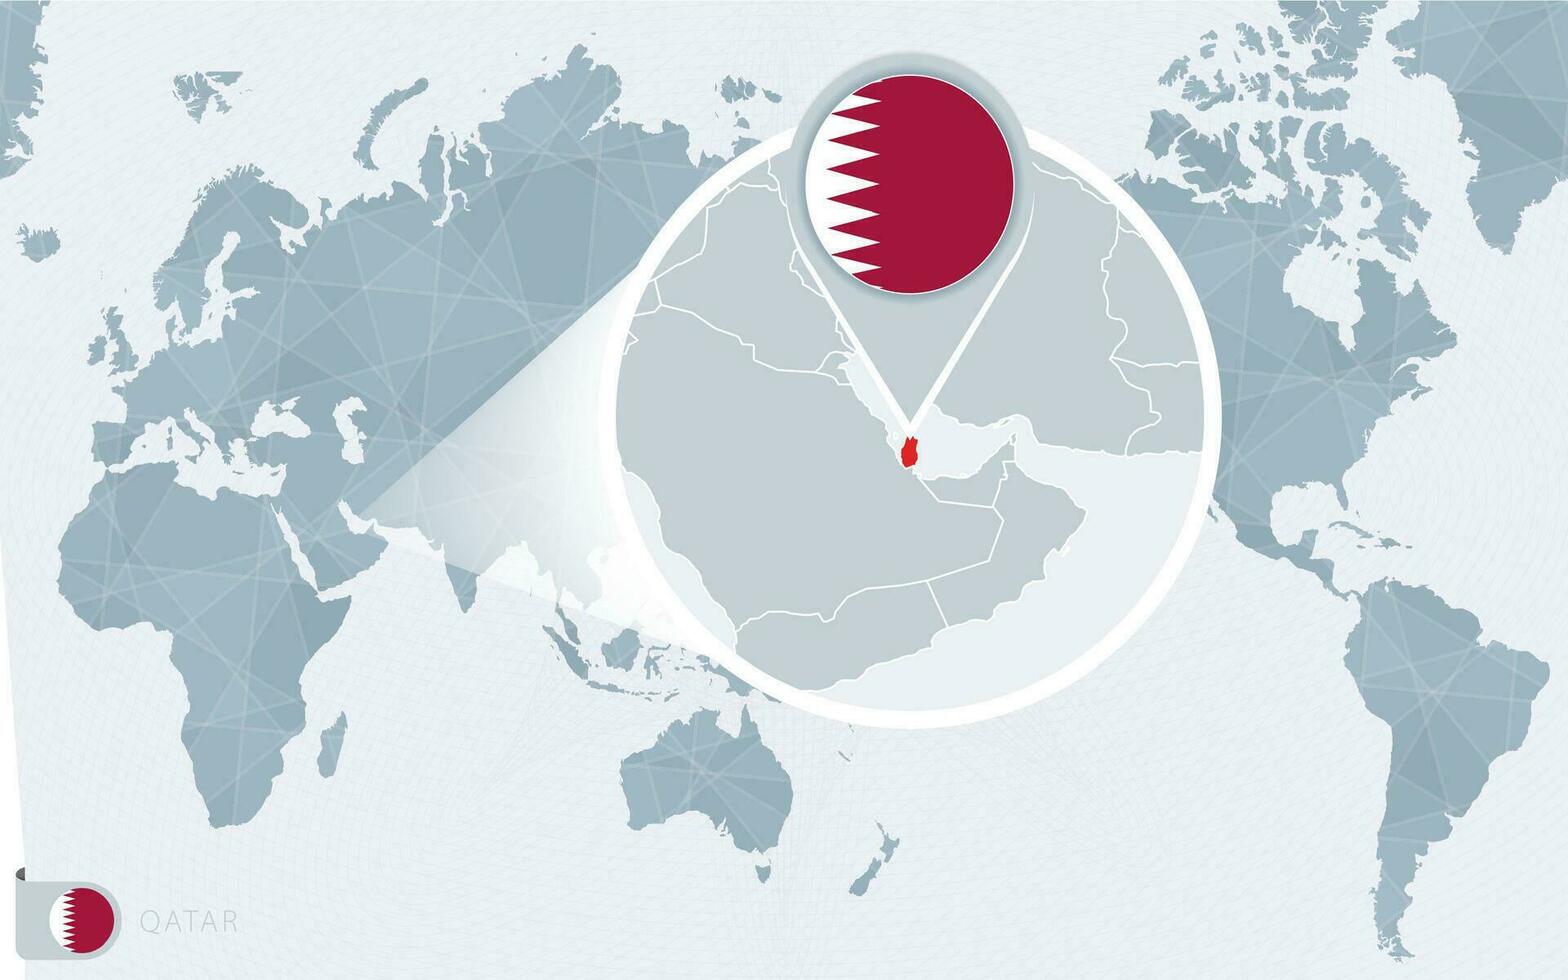 grote Oceaan gecentreerd wereld kaart met uitvergroot qatar. vlag en kaart van qatar. vector